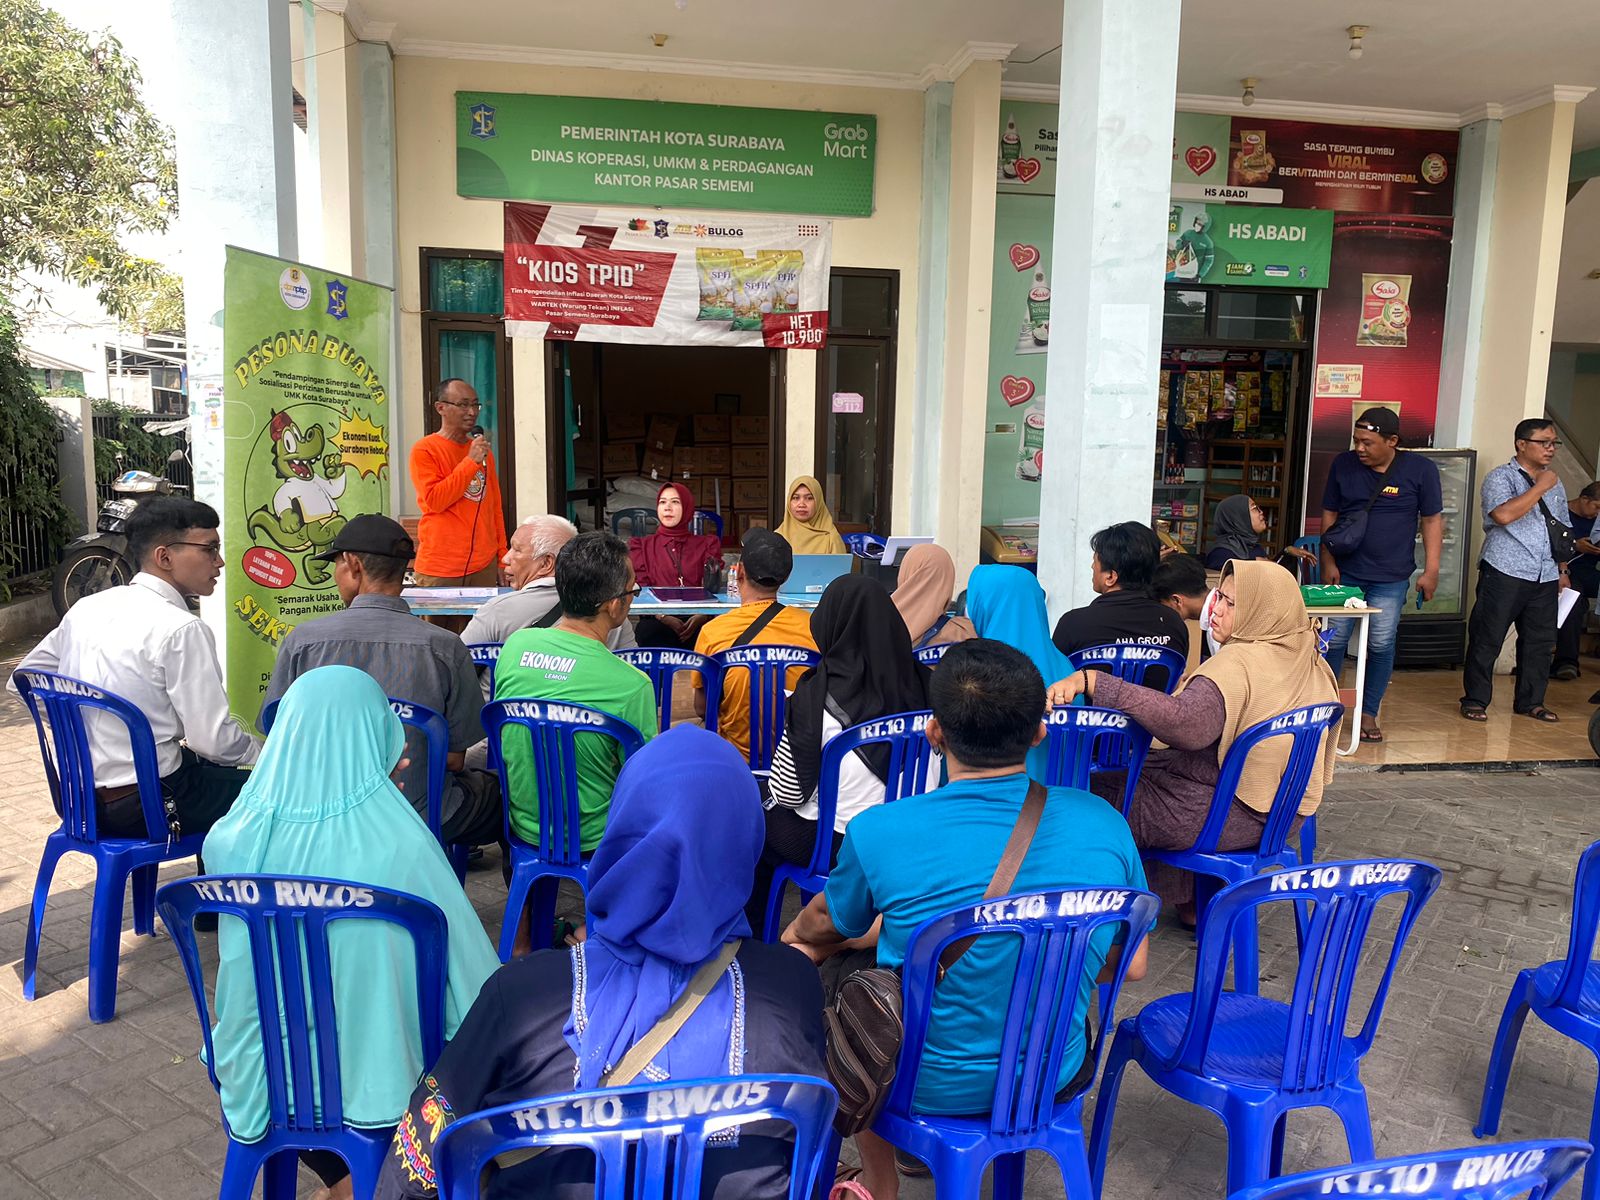 Pendampingan, Sinergi, dan Sosiaisasi Perizinan Berusaha untuk UMK Surabaya Pada Pasar Sememi